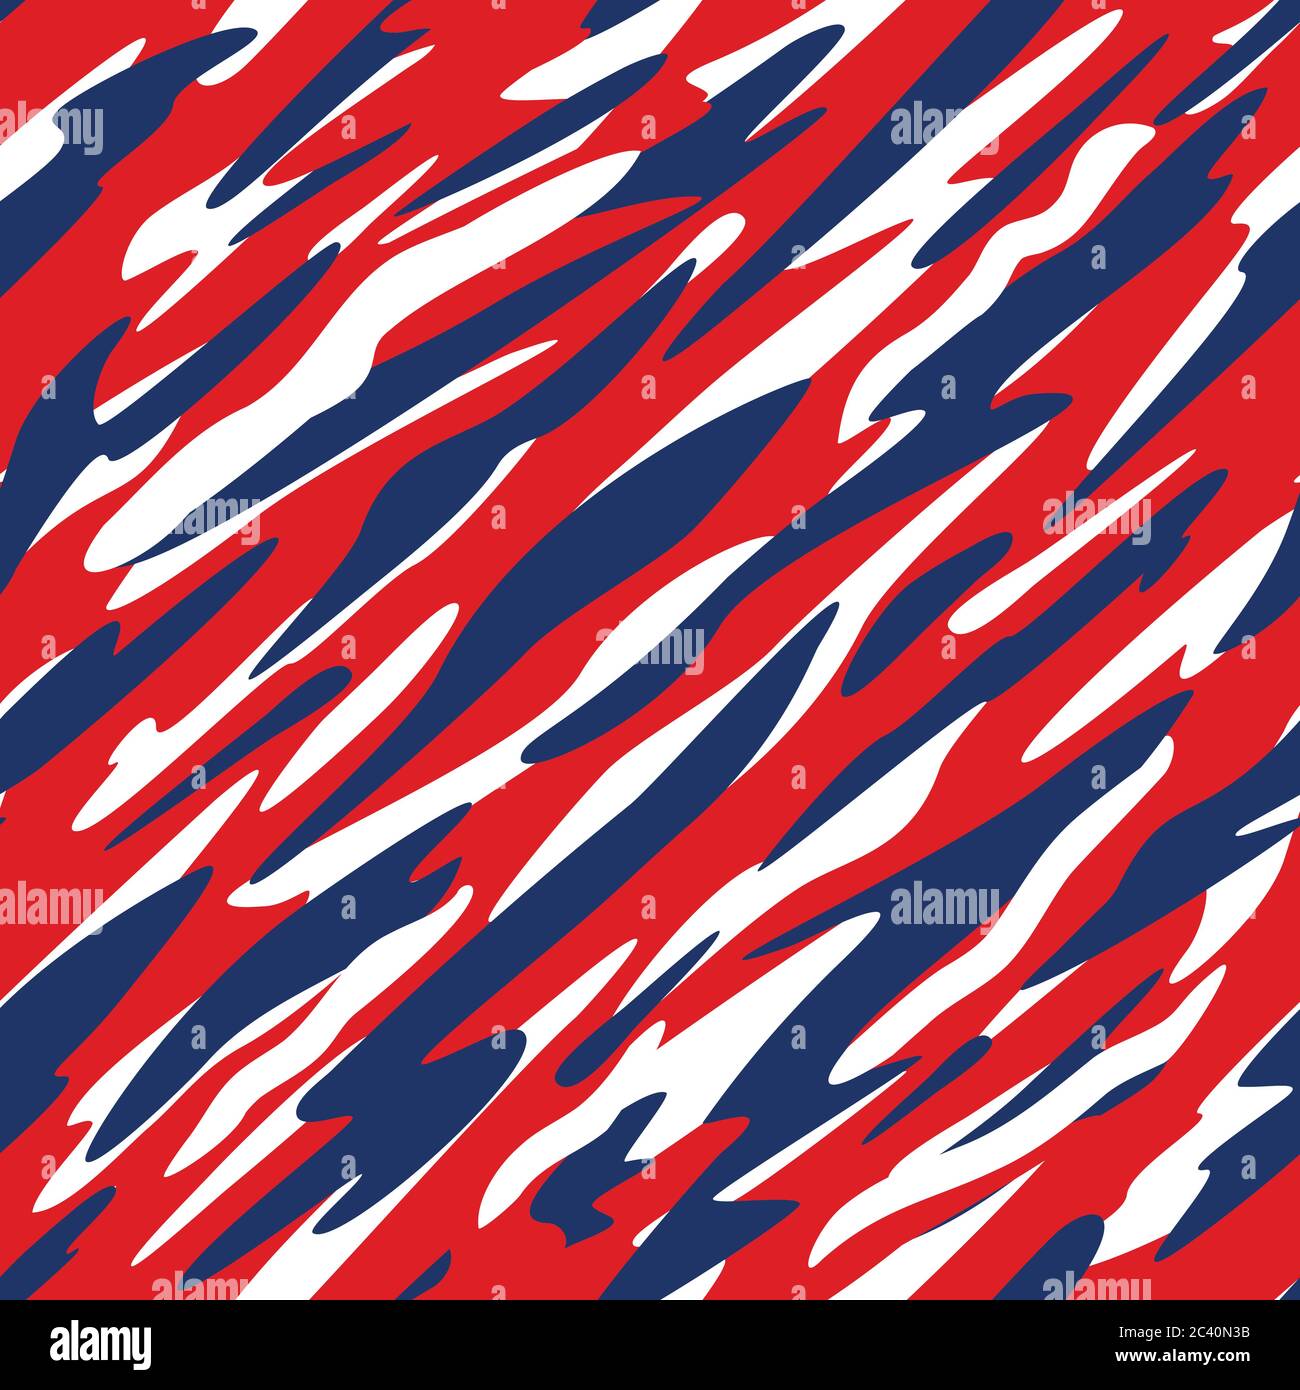 Rot, Weiß und Blau Patriotische abstrakte Diagonal Camo-Stil Nahtloses wiederholendes Muster Vektor Illustration Stock Vektor